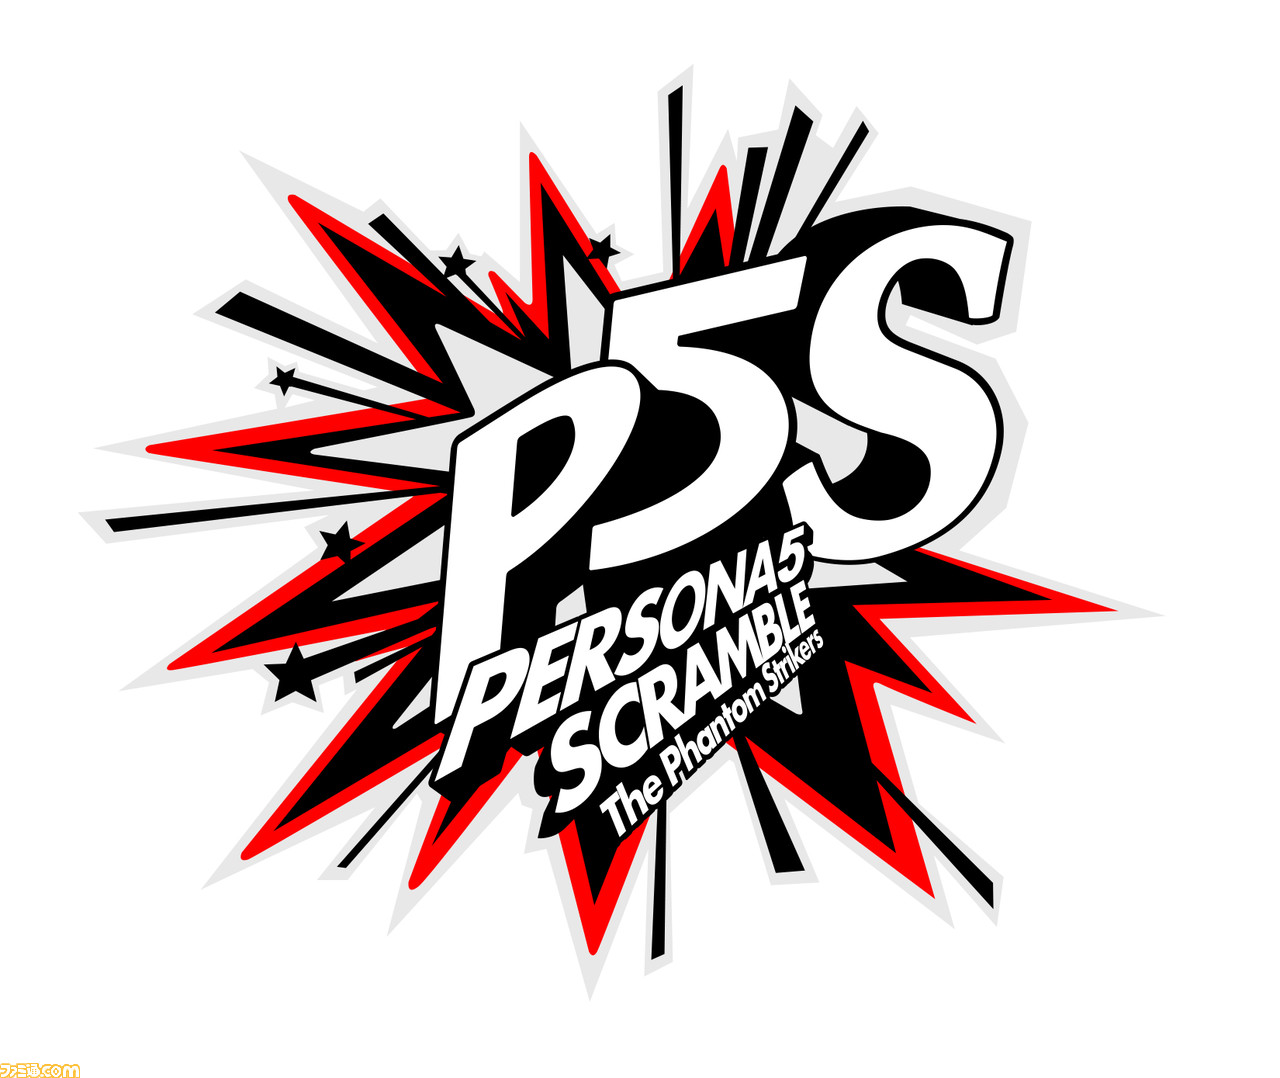 ペルソナ5 スクランブル Opアニメが公開 怪盗服を着た謎の人物の姿も ファミ通 Com